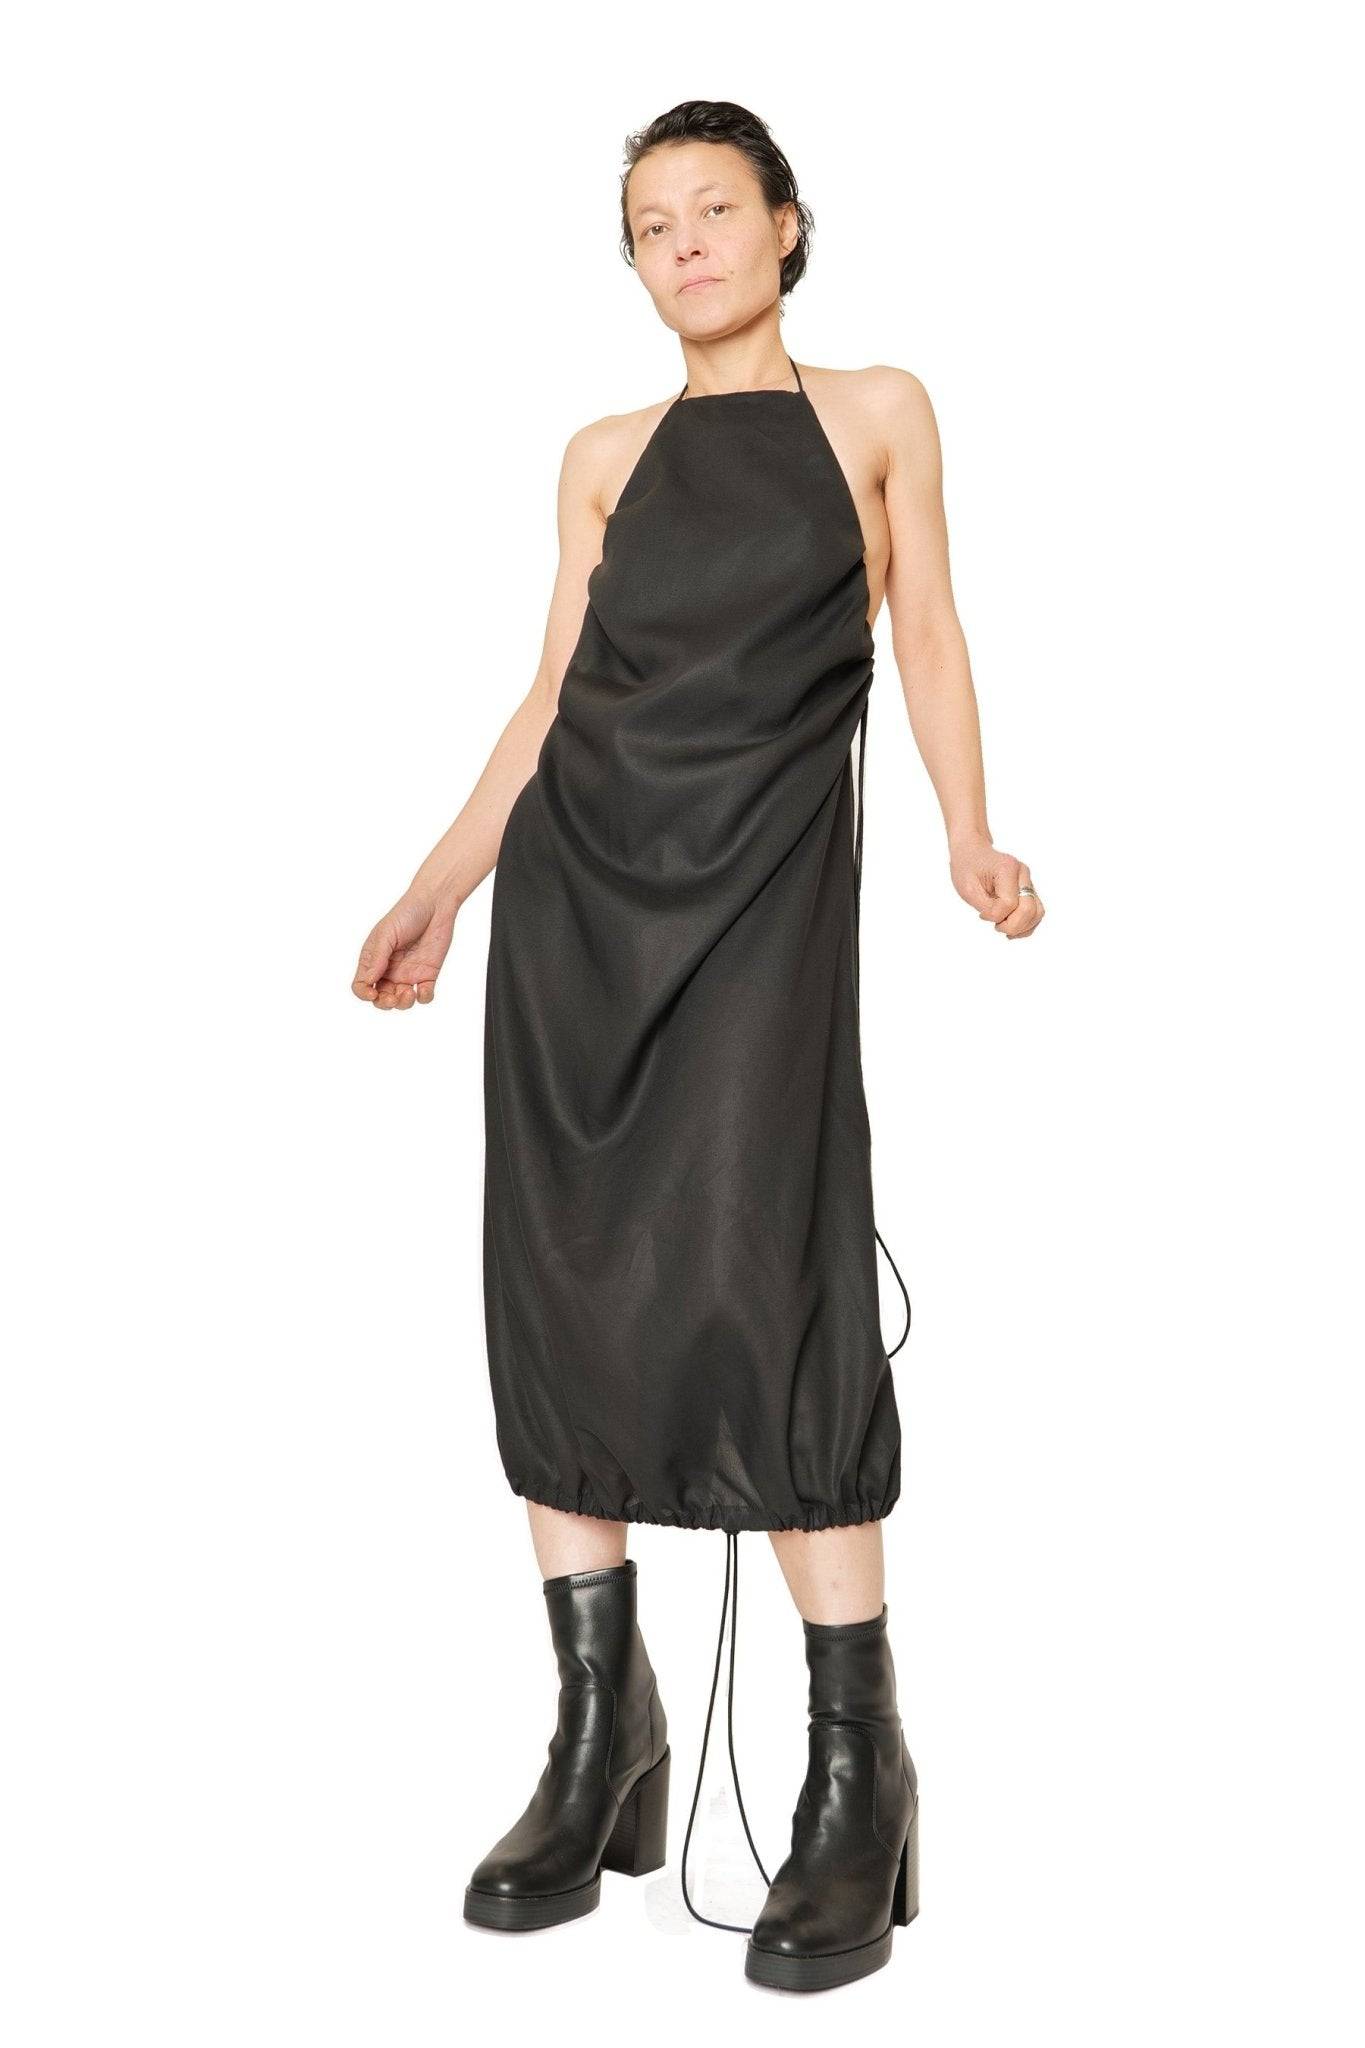 Kleid X aus Lyocell Tencel - schwarz - KOLO Berlin